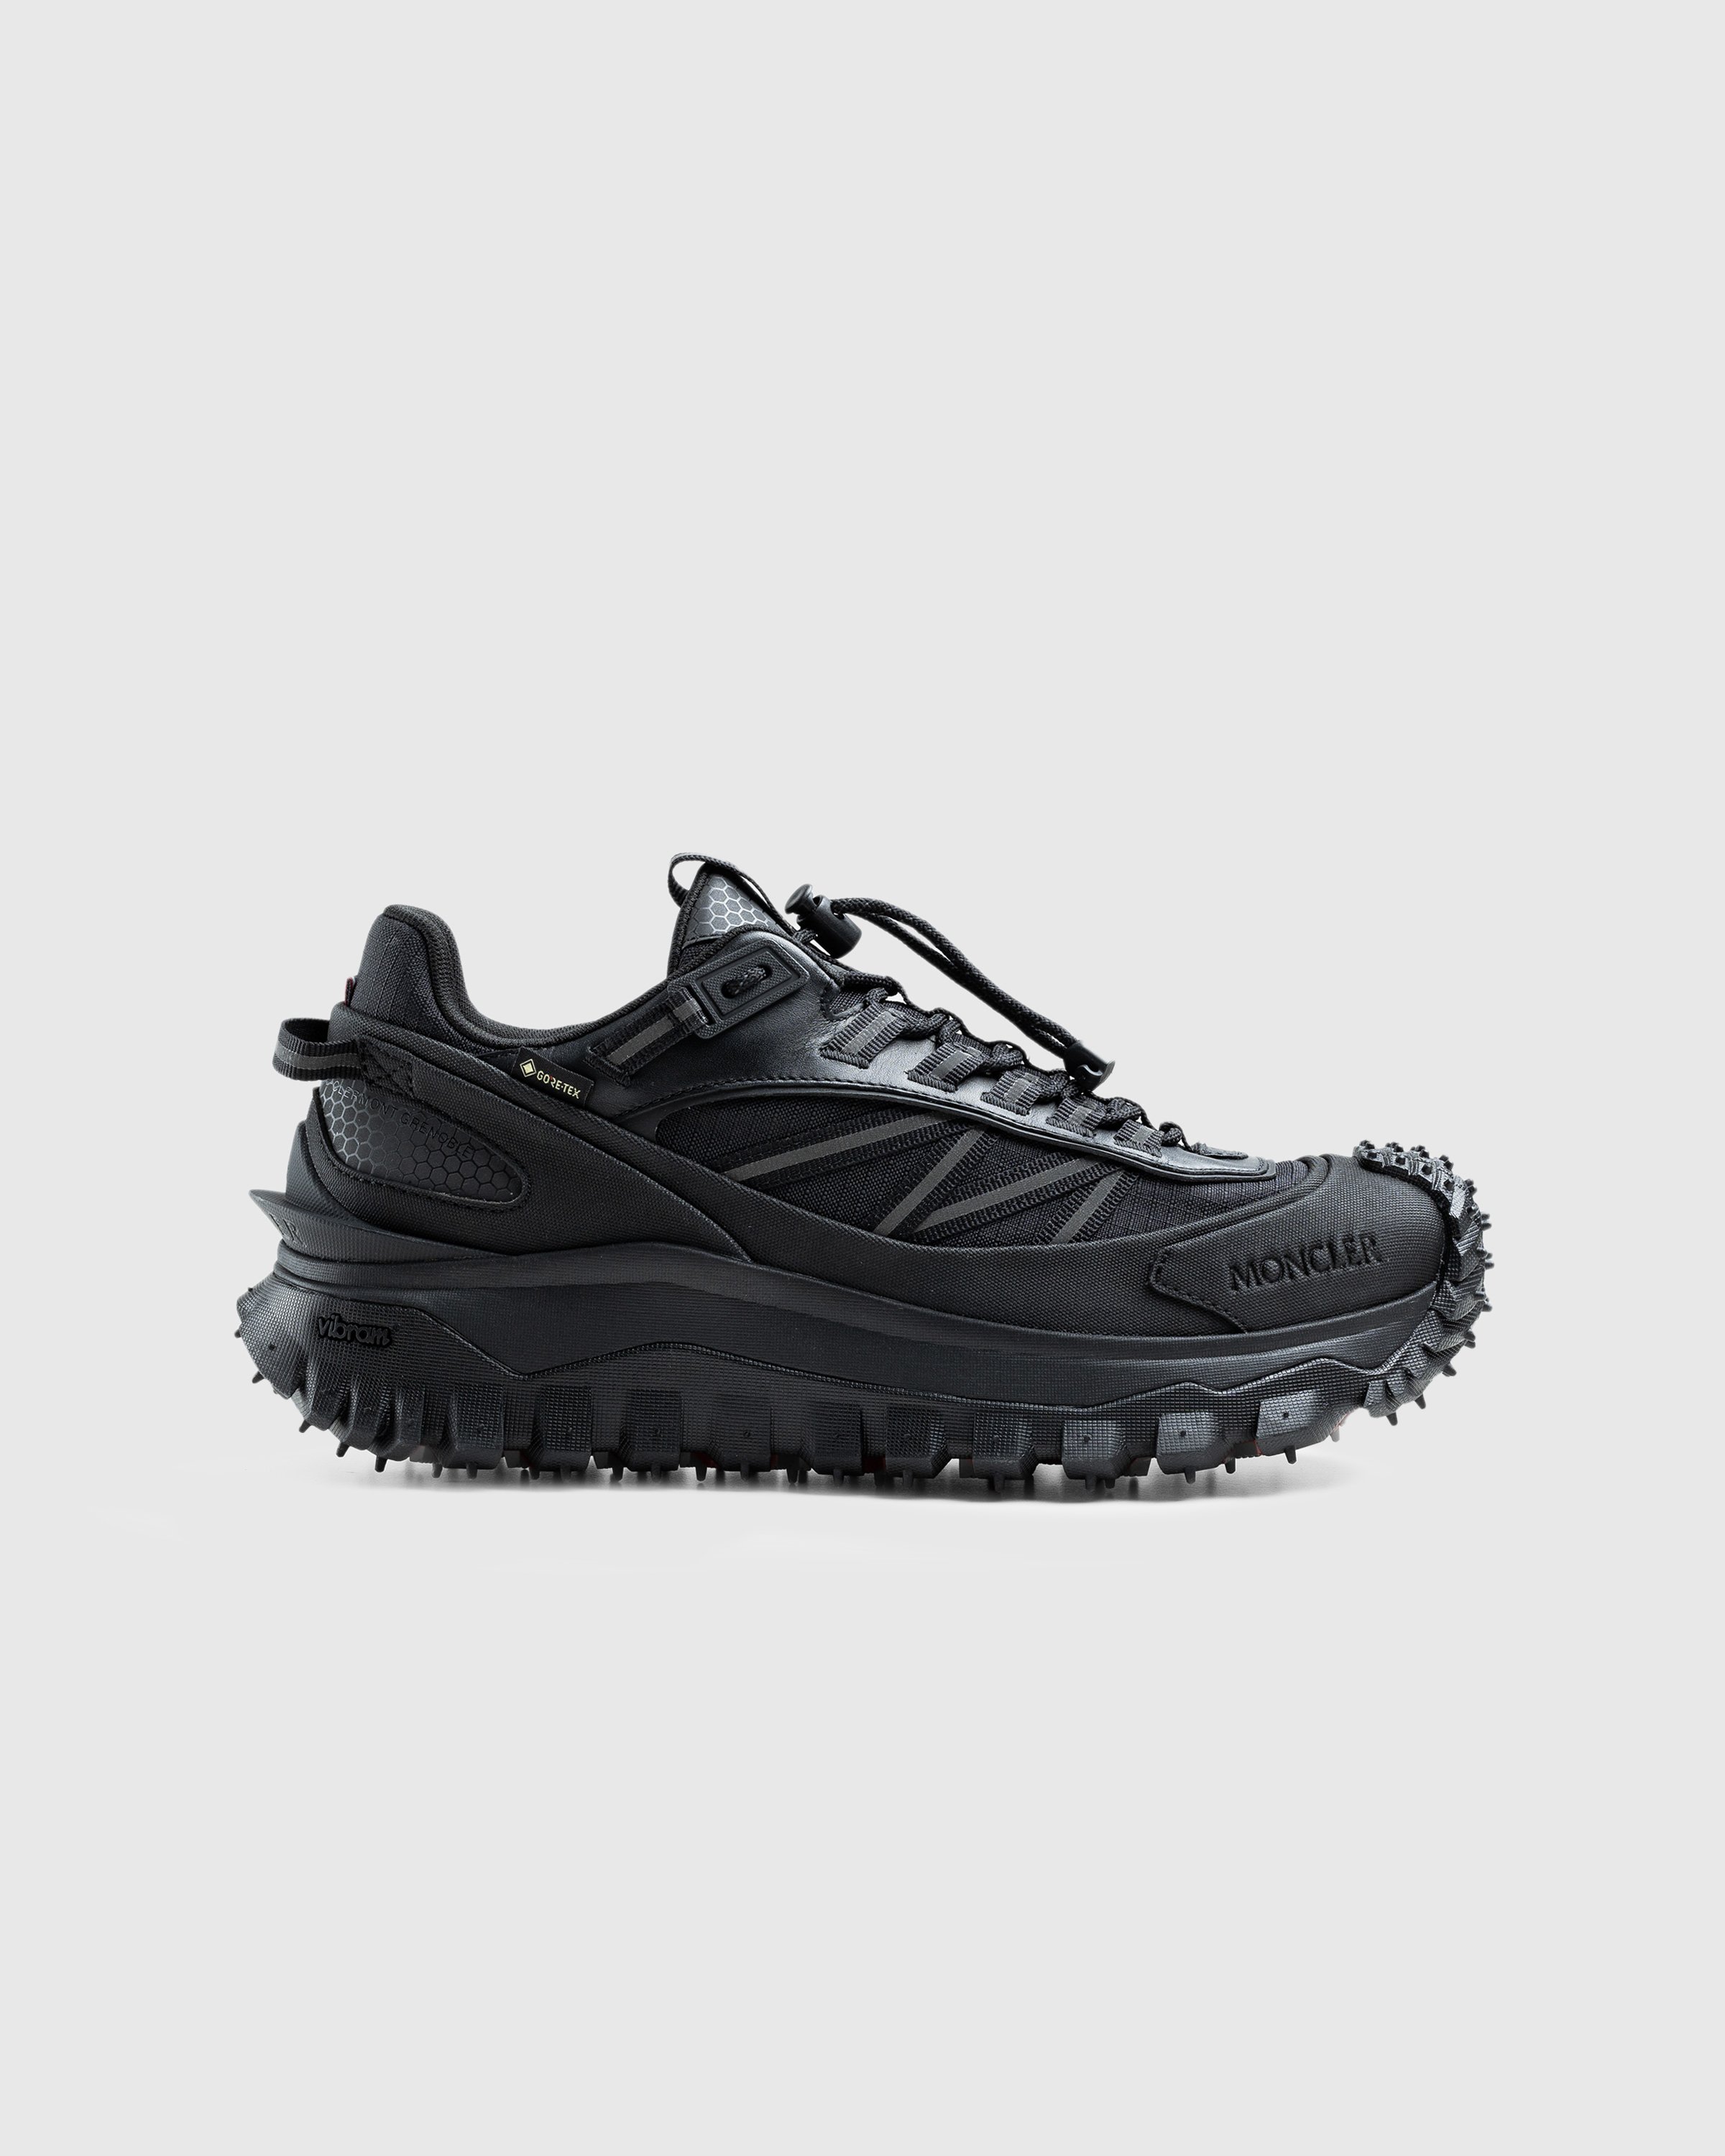 Moncler - Trailgrip Gtx Low Top Sneakers Black - Footwear - Black - Image 1